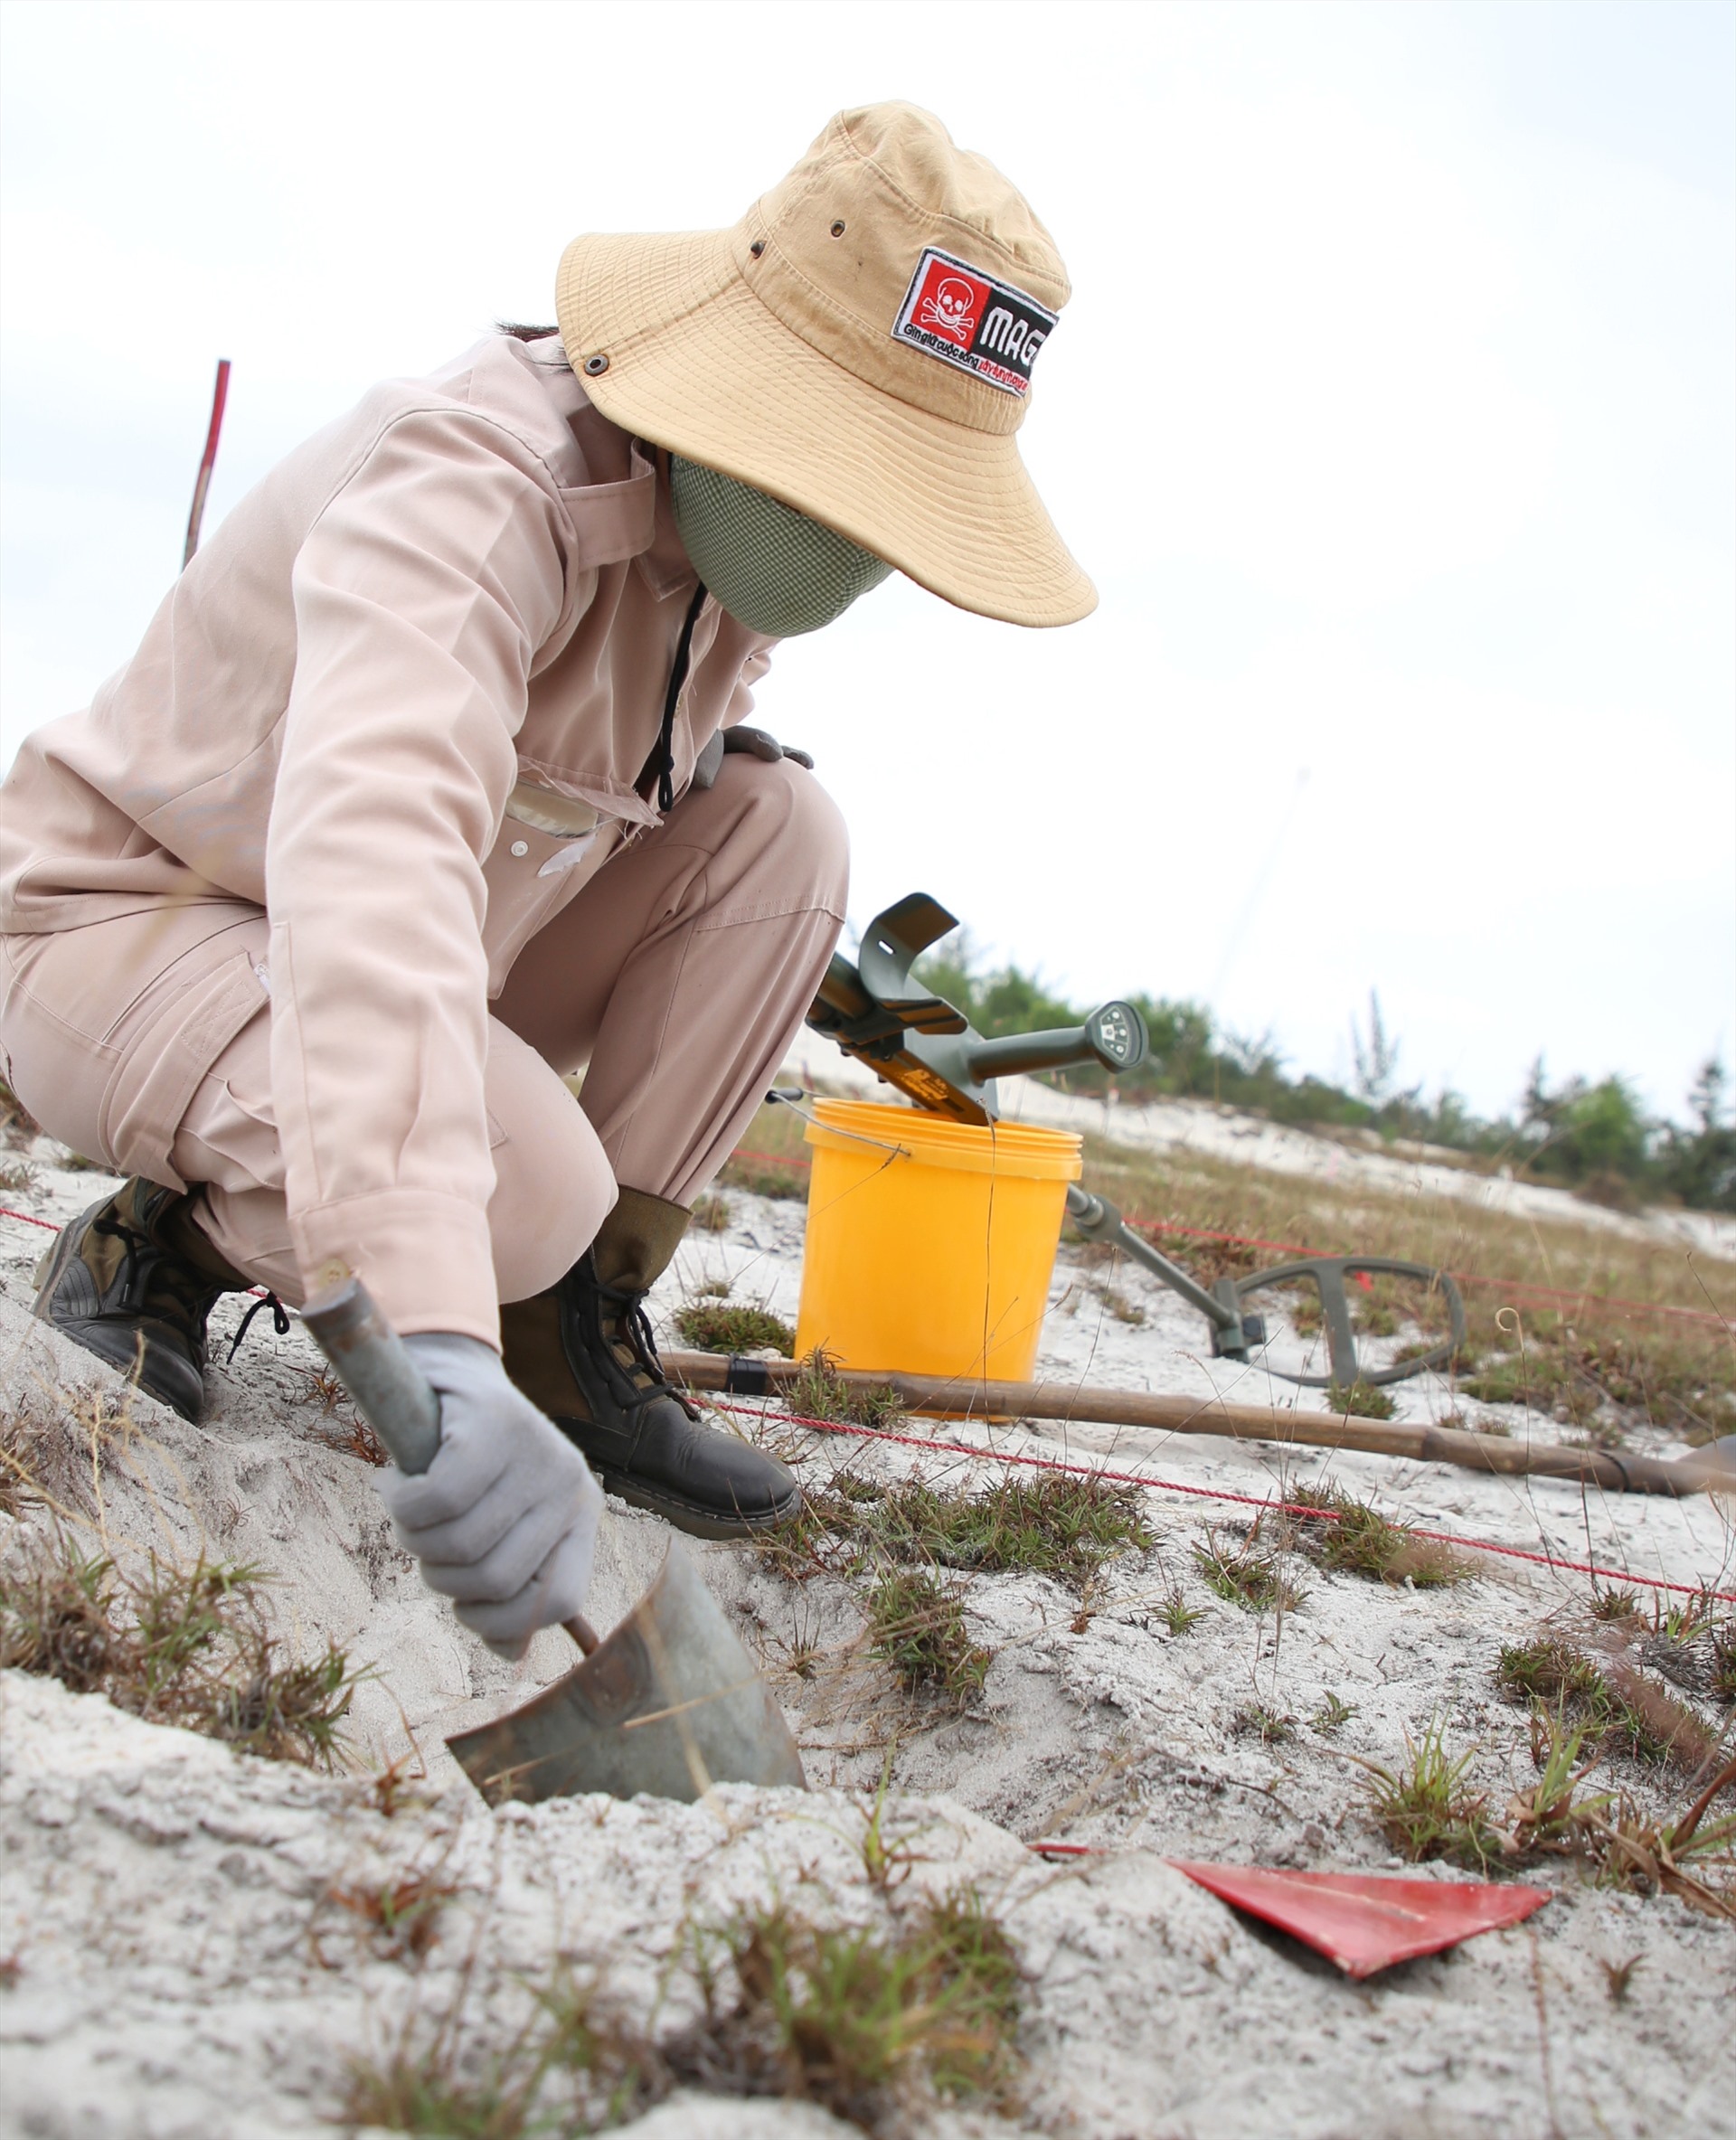 Một thành viên sử dụng chiếc xẻng nhỏ, đào nhẹ từng lớp đất cát ở vị trí có đặt tấm giác màu đỏ để tìm kiếm vật mà máy rà bắt được.